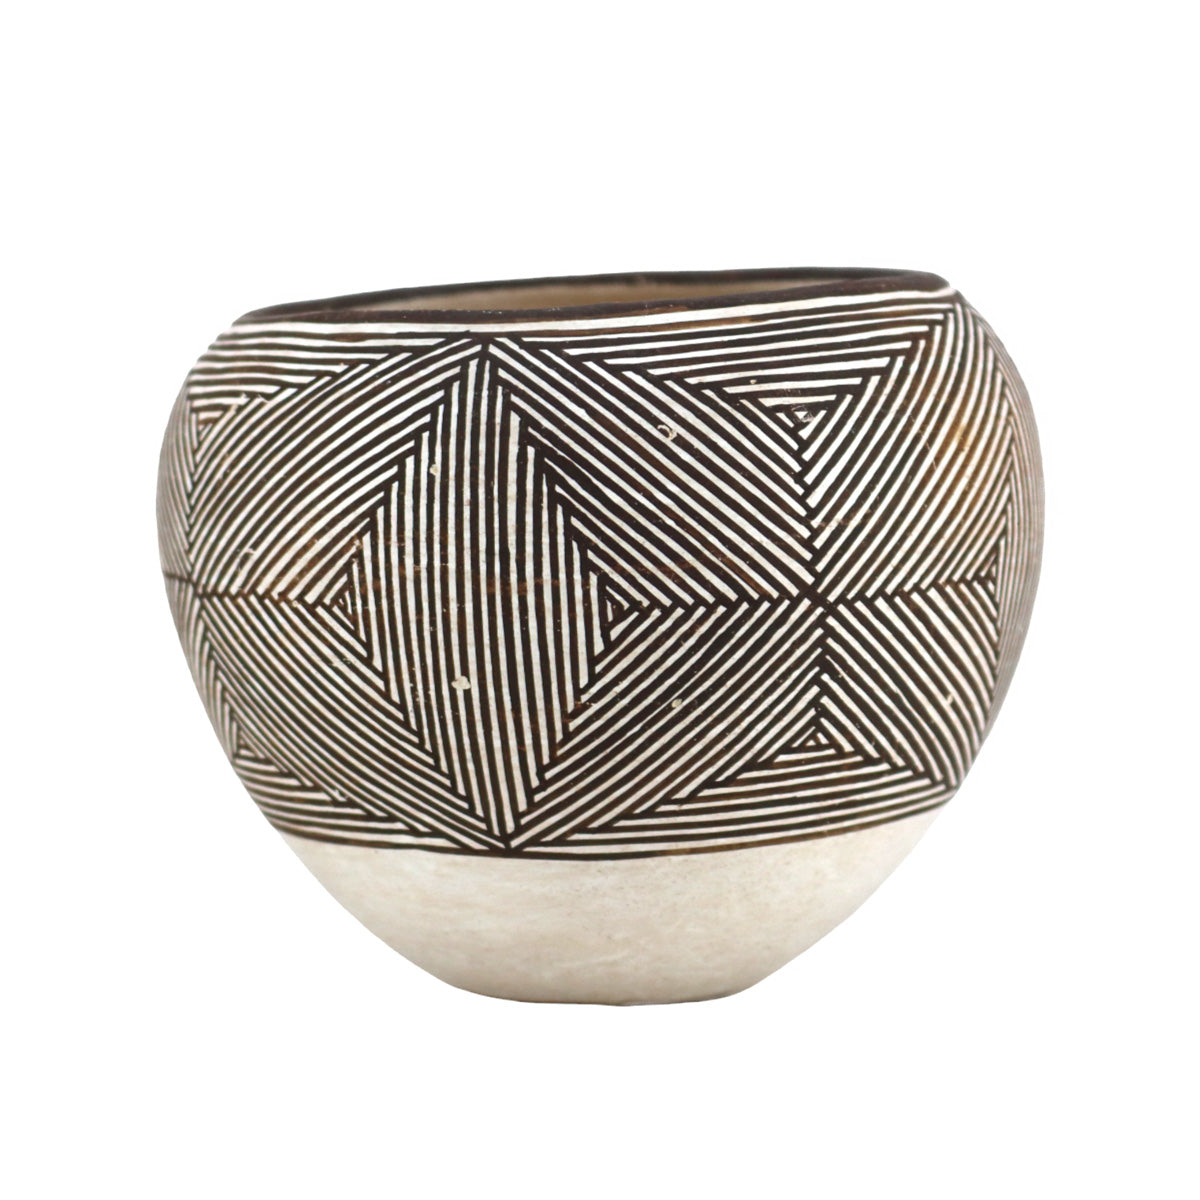 Marie Z. Chino (1907-1982) - Acoma Fine Line Jar c. 1960-70s, 3.5" x 4.5"